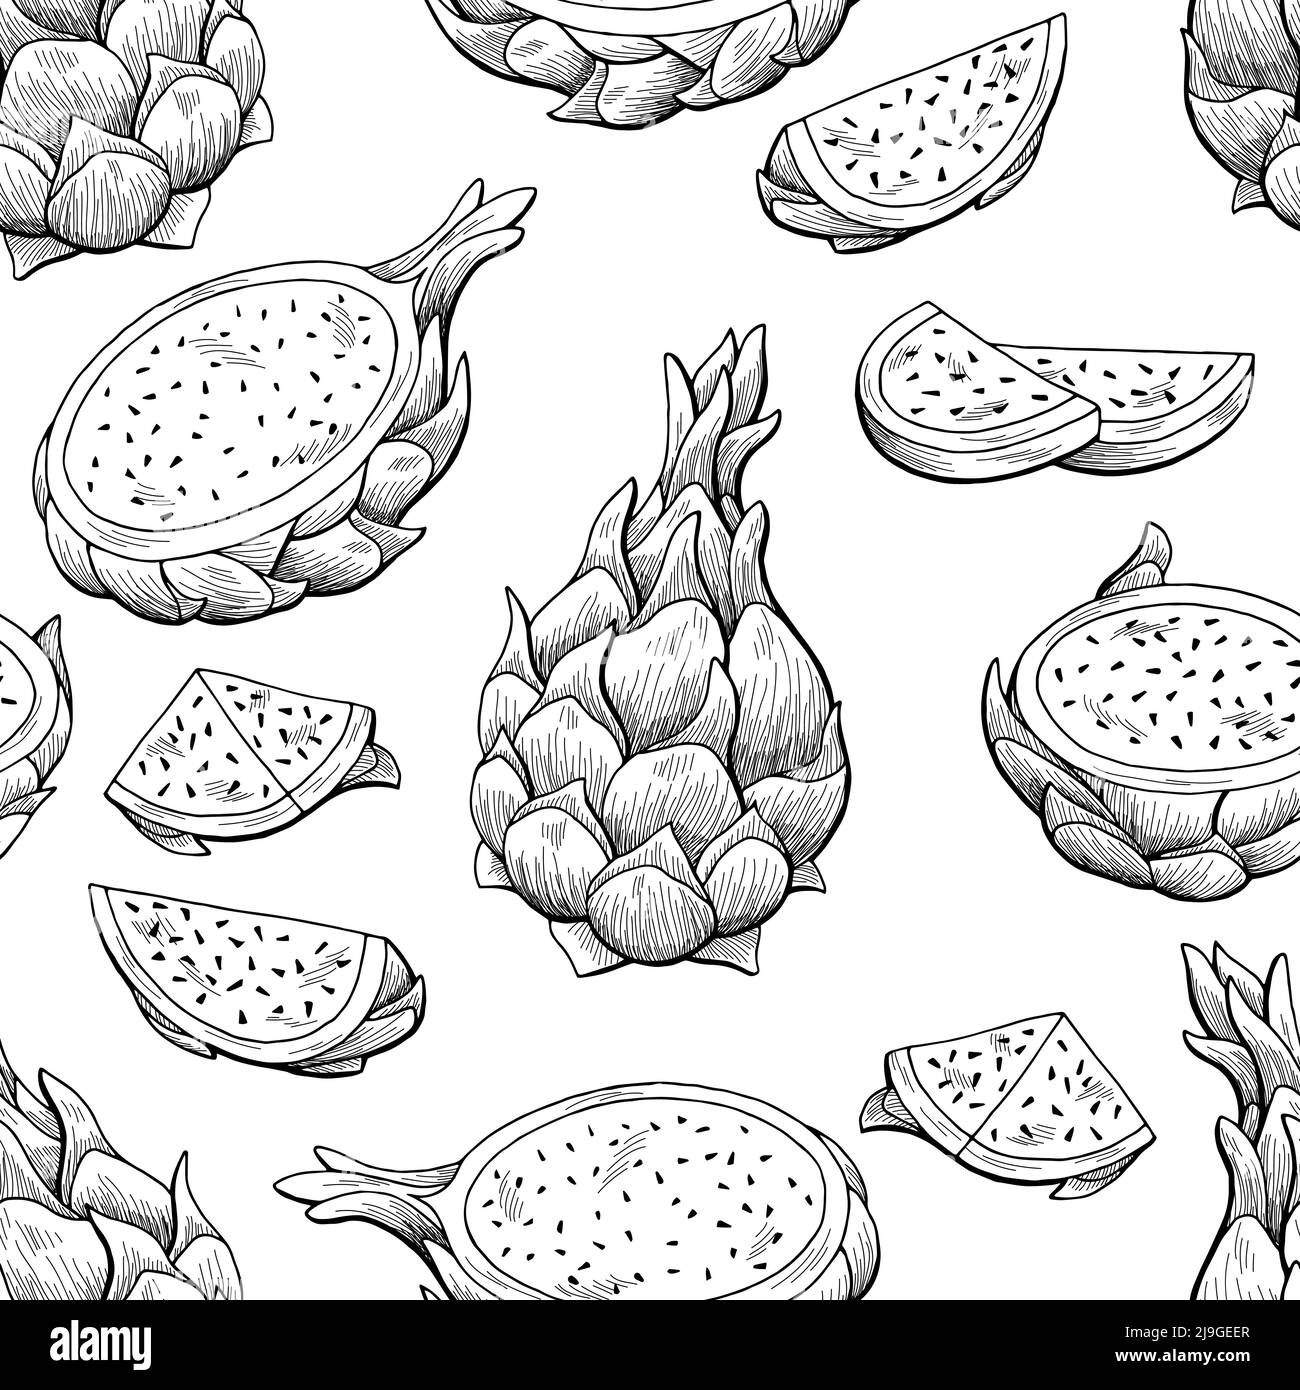 Pitaya Drachen Obst Grafik schwarz weiß nahtlose Muster Hintergrund Skizze Illustration Vektor Stock Vektor